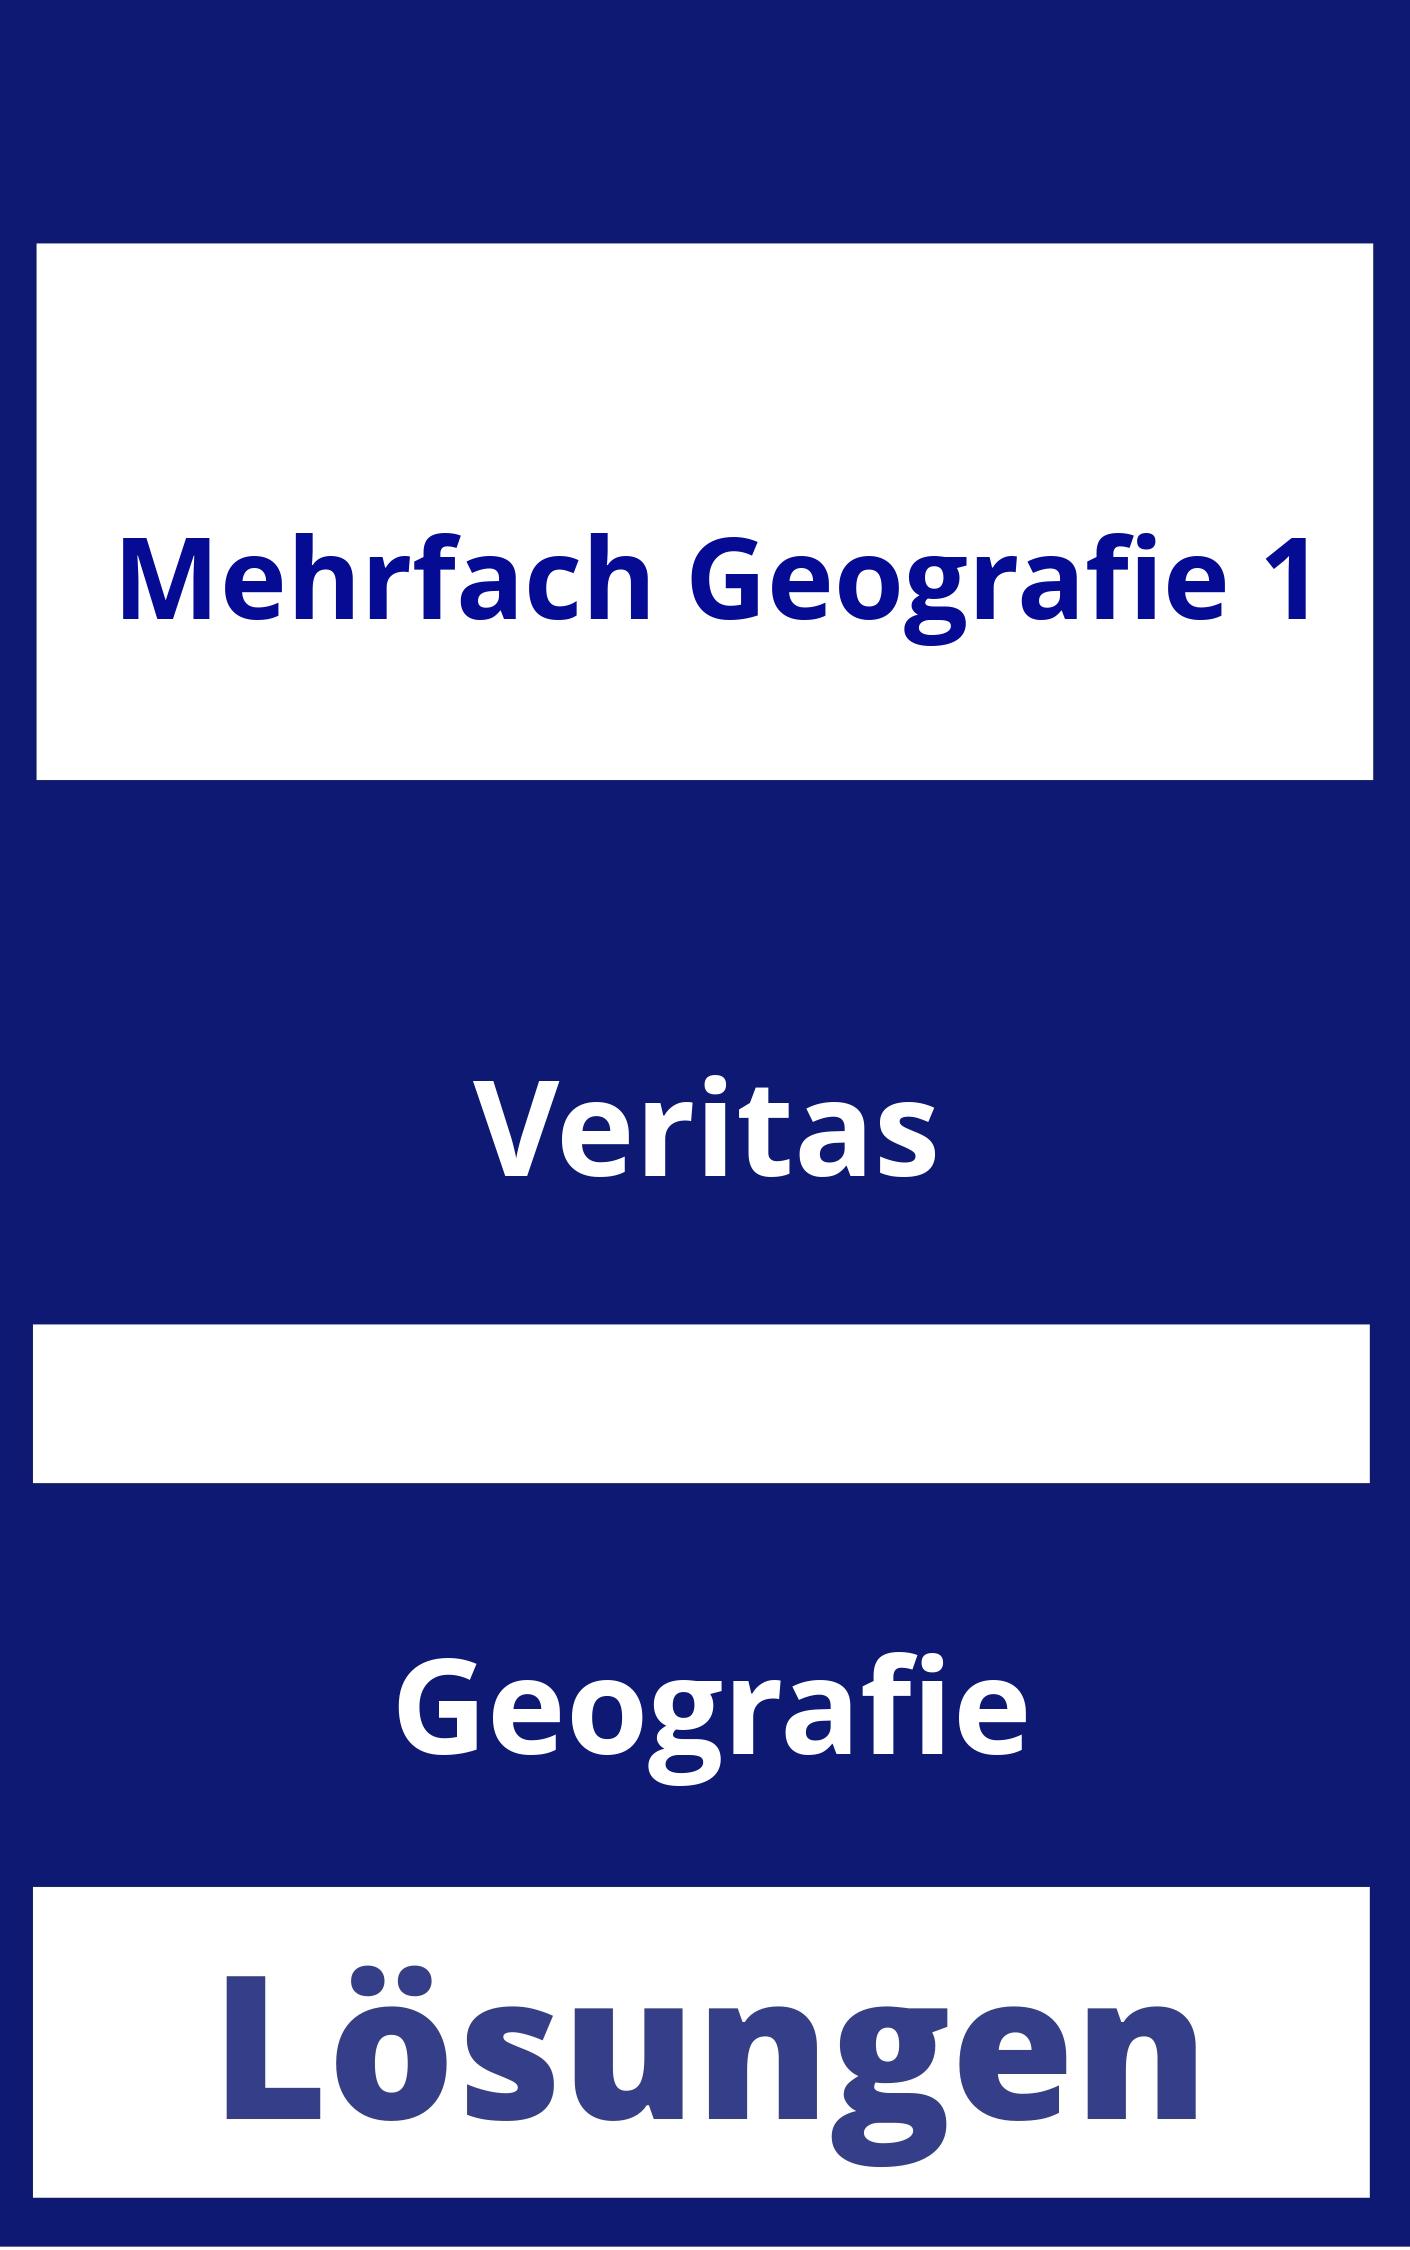 MEHRfach Geografie 1 Lösungen PDF